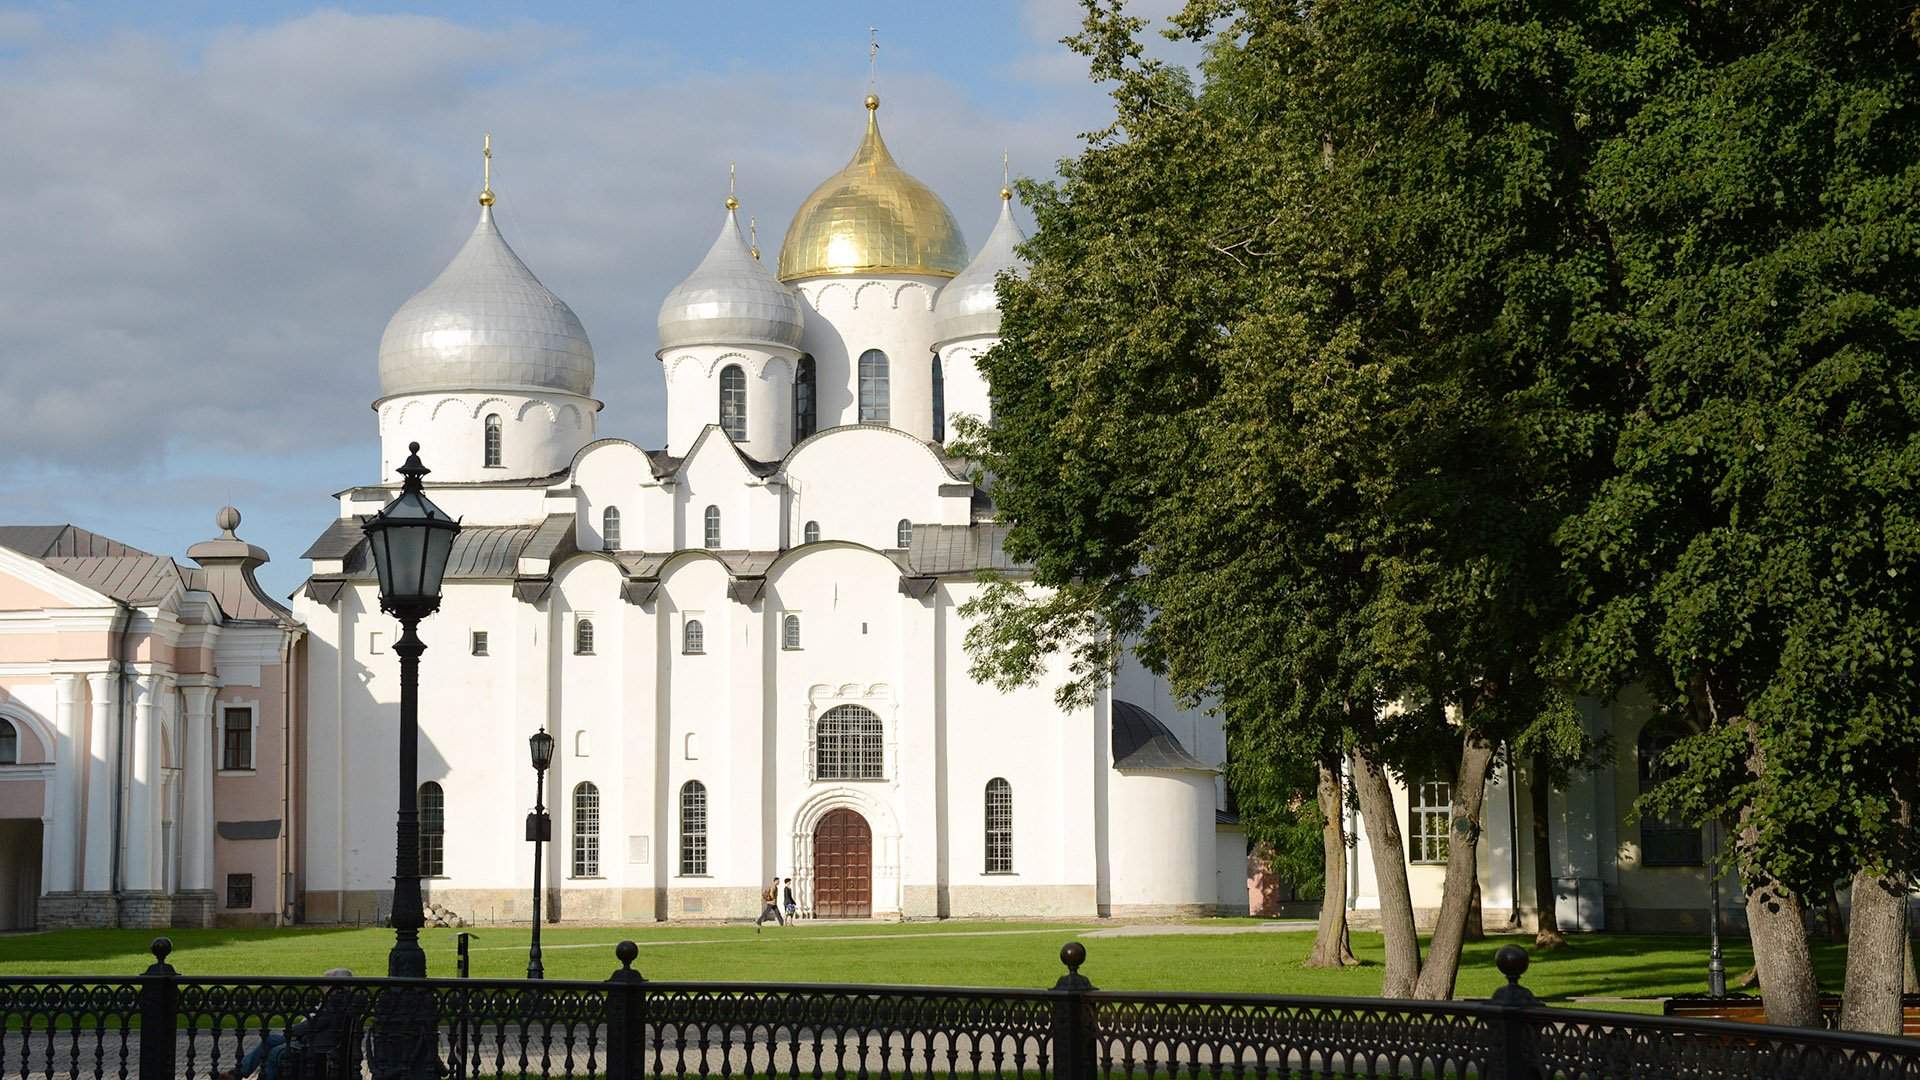 Что можно и категорически нельзя делать в церкви: простые правила | Москва | ФедералПресс